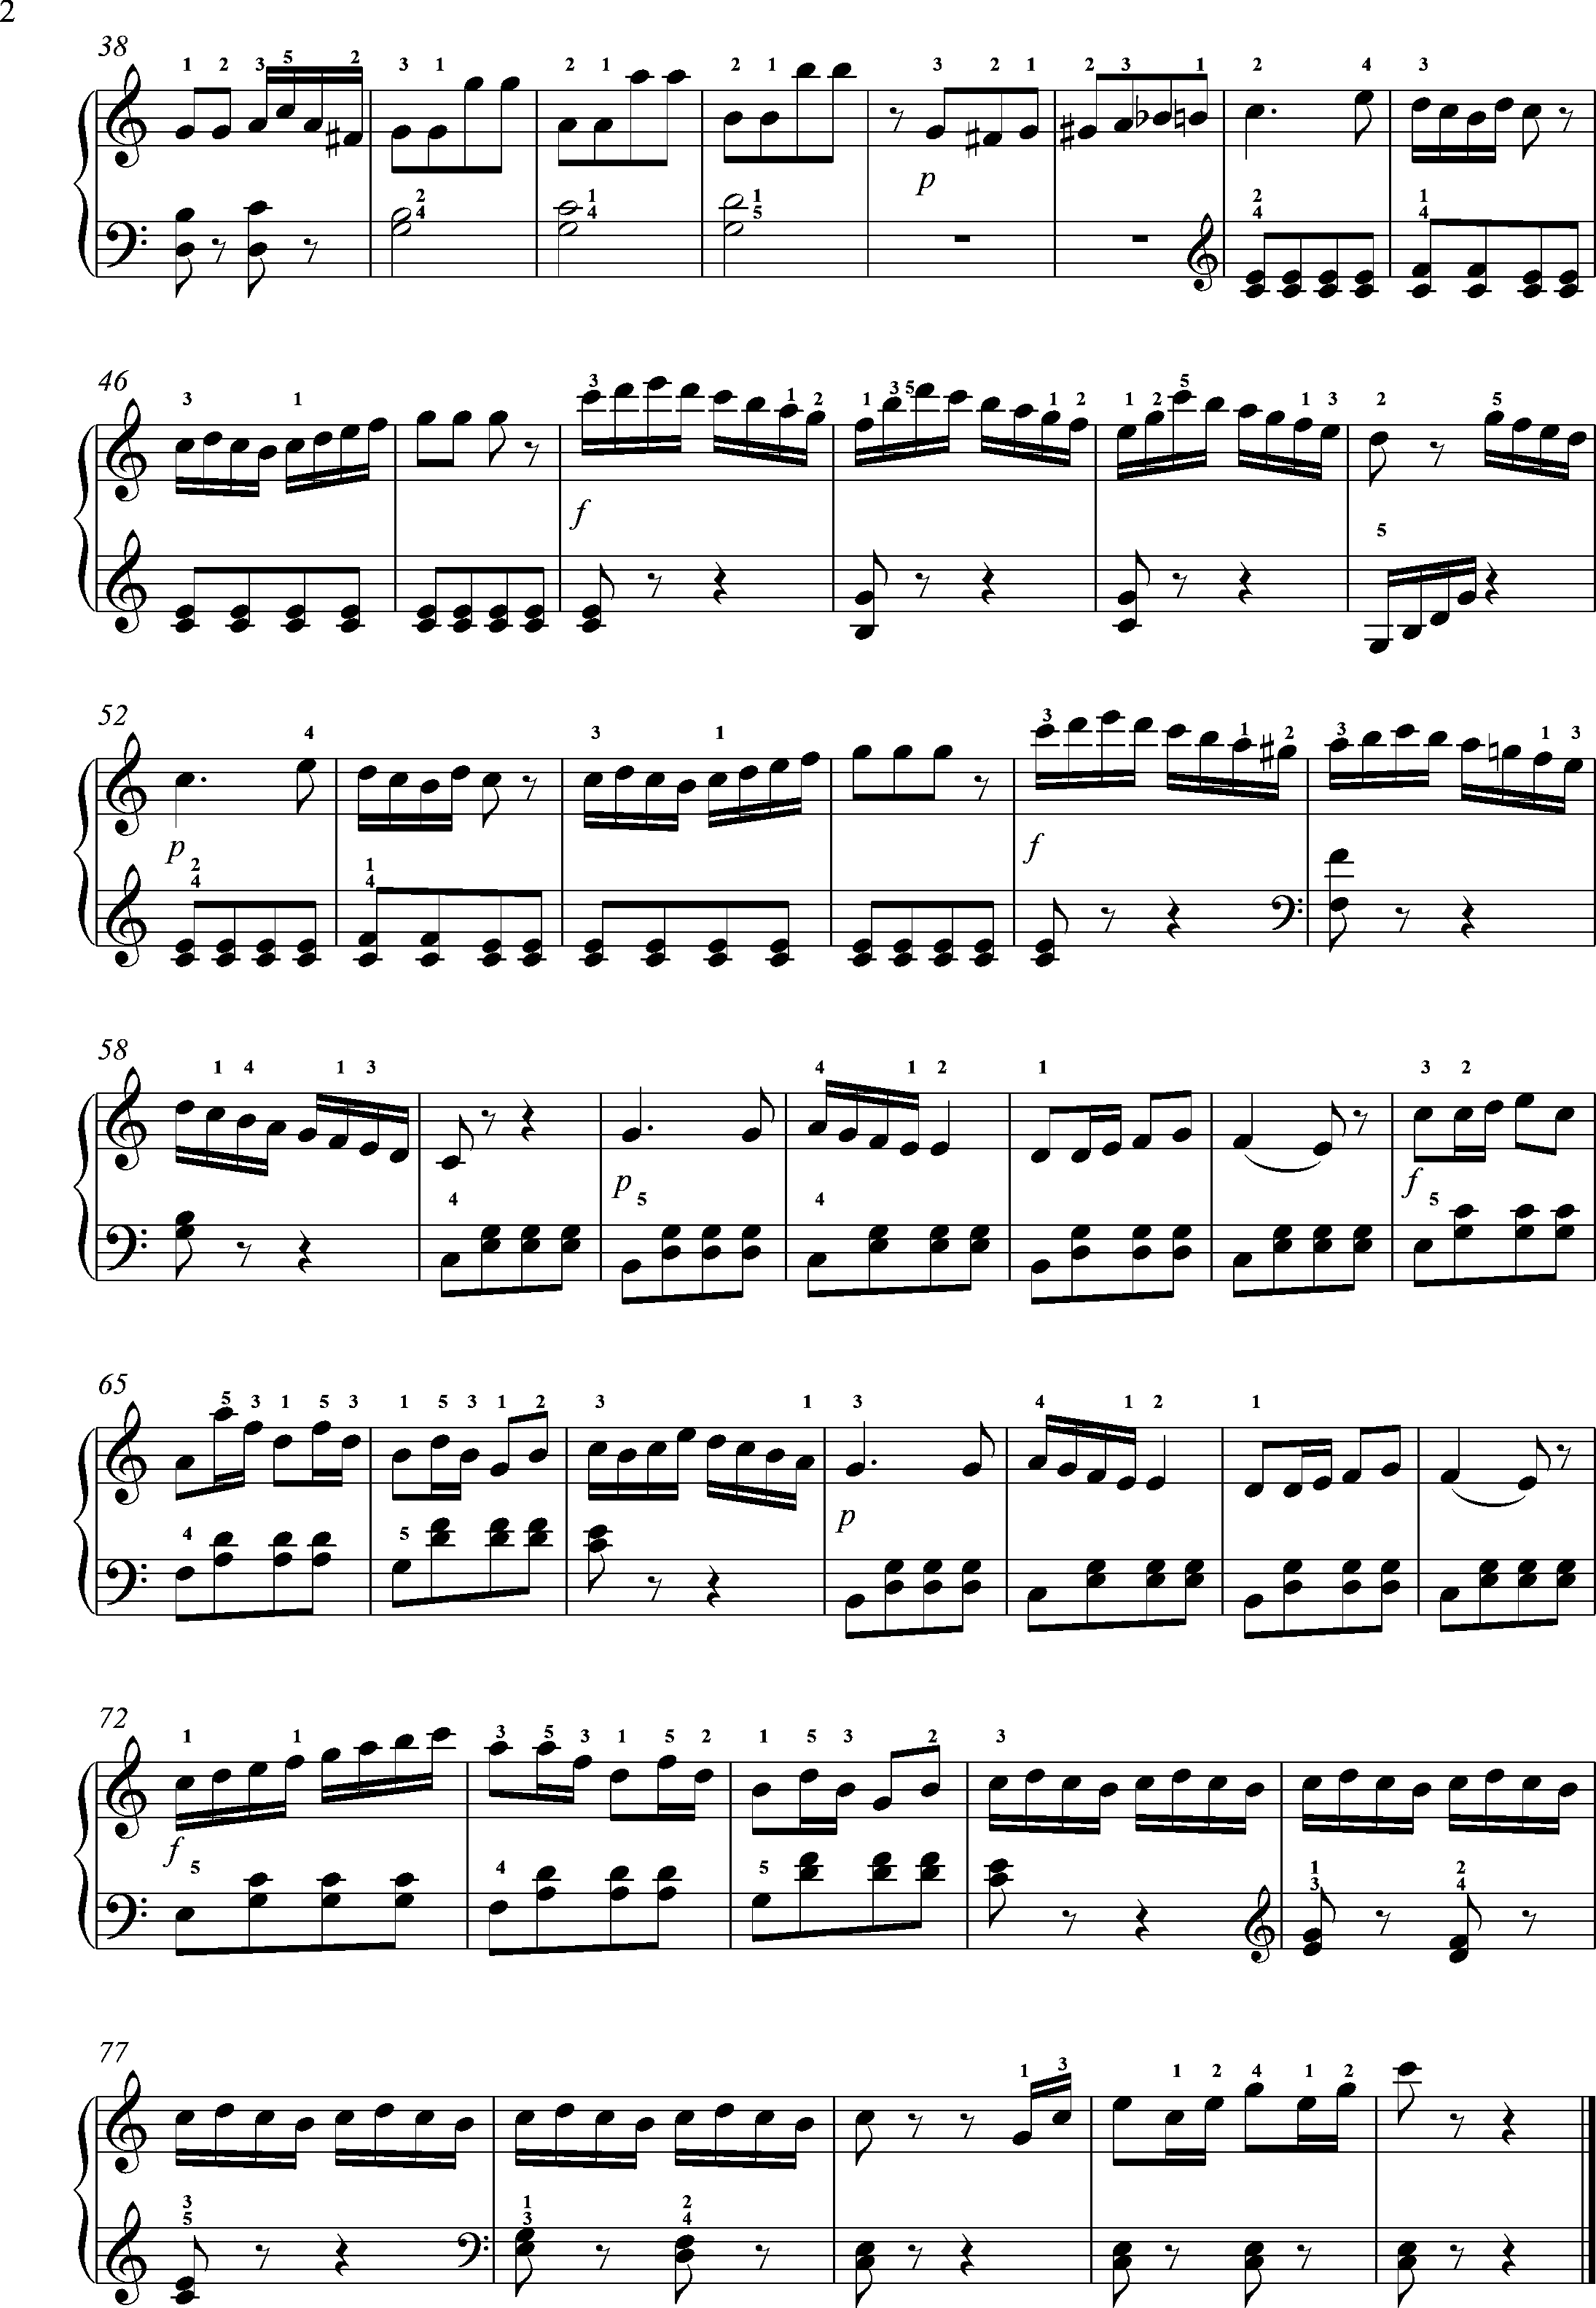 Clementi, Sonatine Nr. 3, 3. Satz - Allegro Seite 2